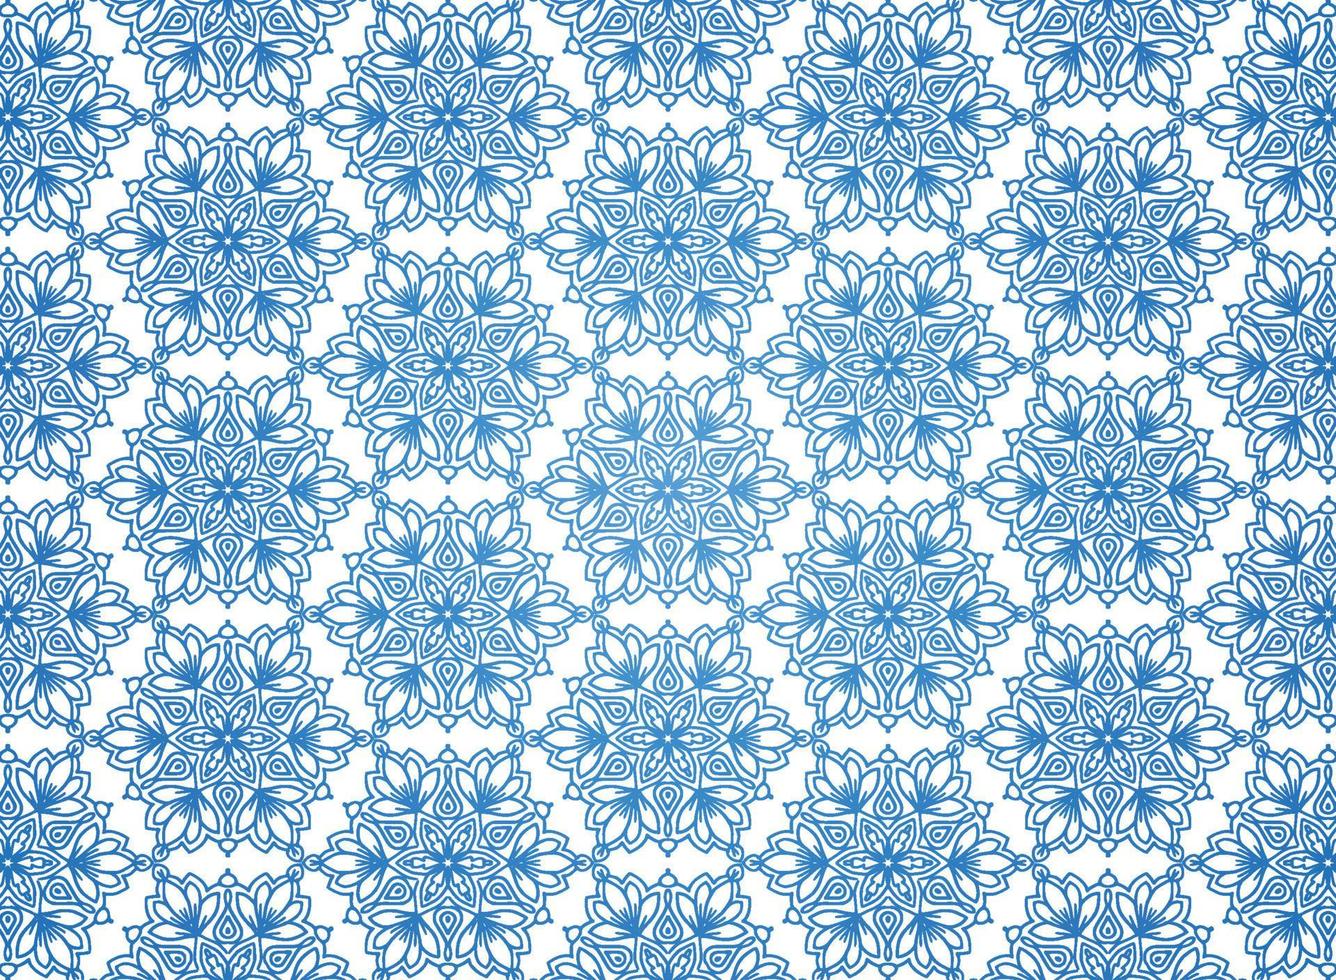 Ethnic decorative blue mandala pattern on white background vector